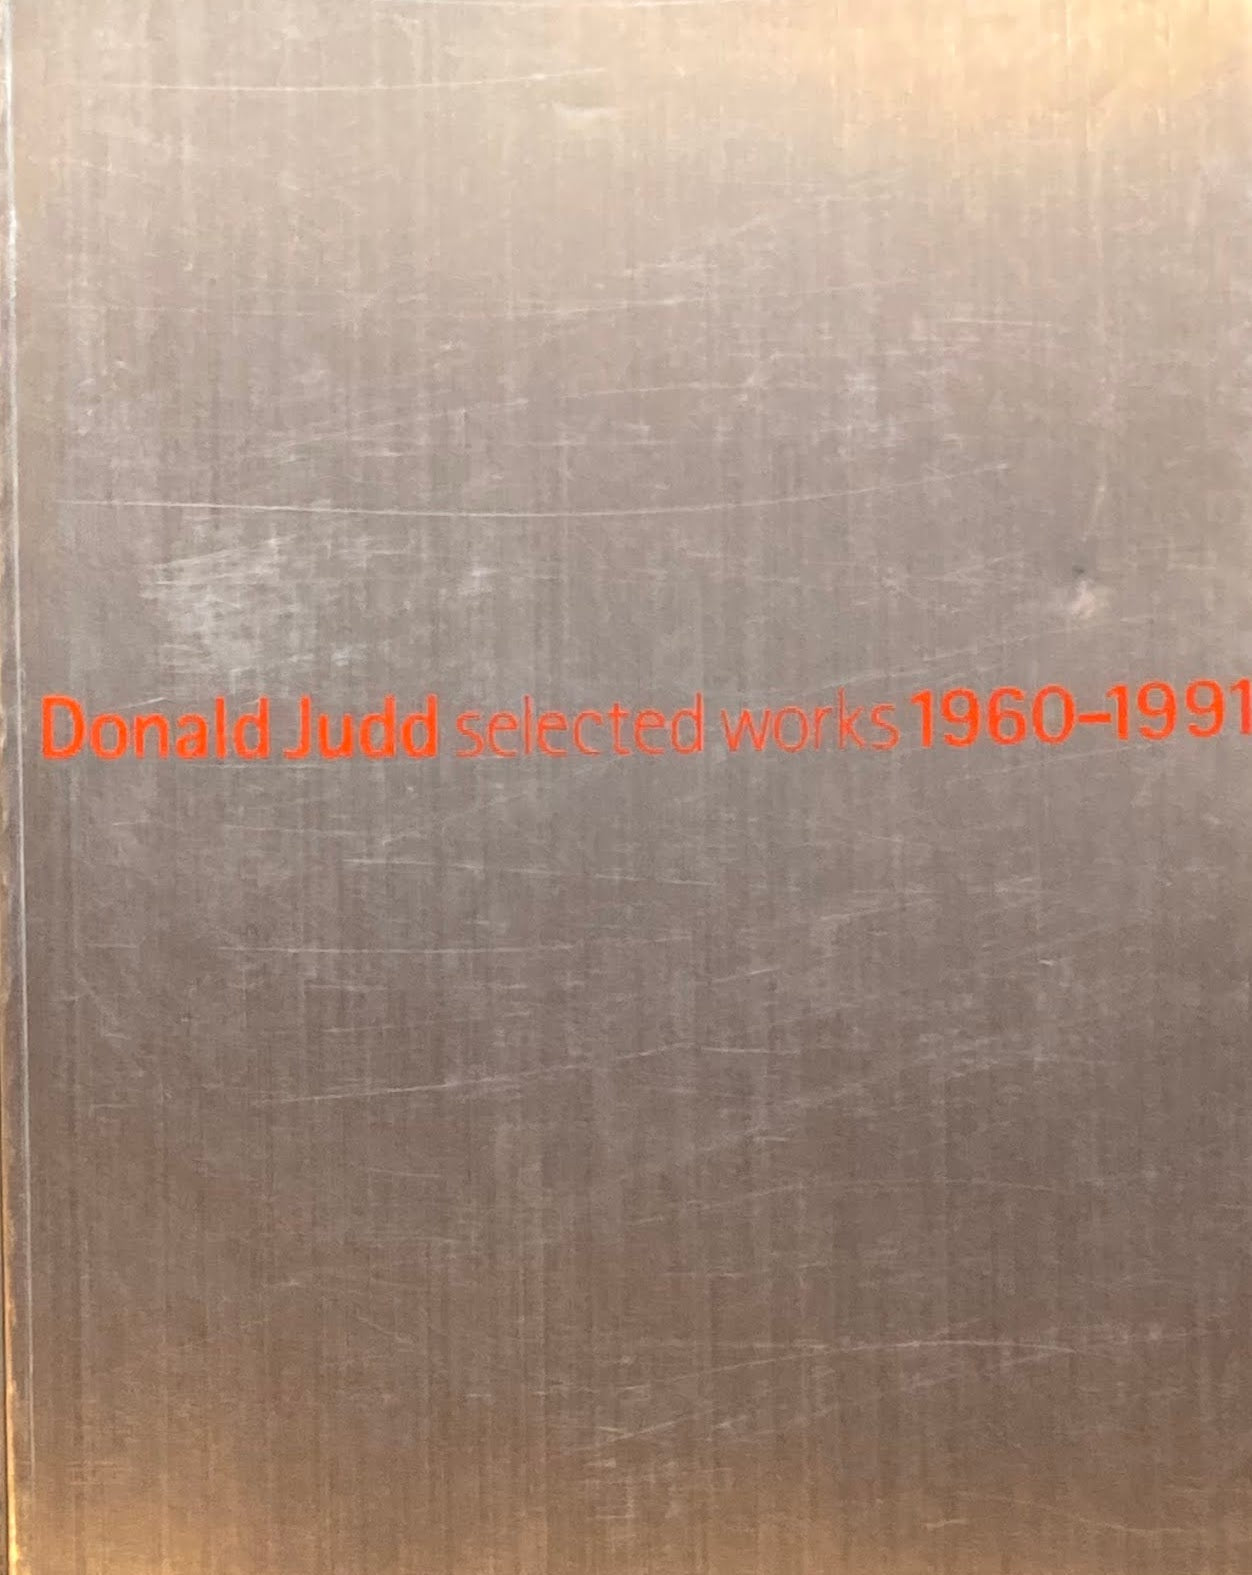 ドナルド・ジャッド 1960-1991 Donald Judd selected works